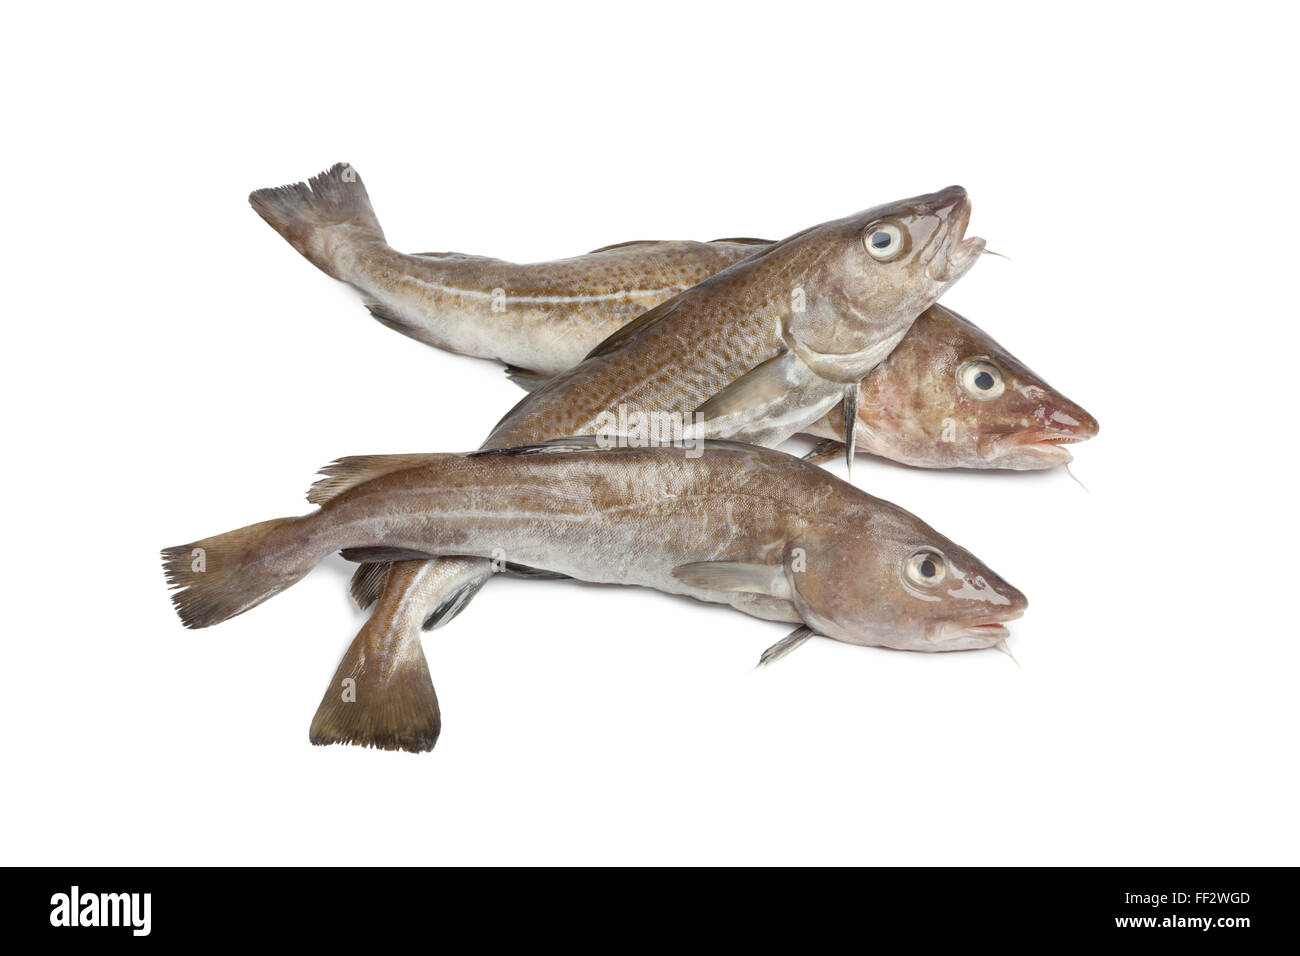 Fresh atlantic cod fishes on white background Stock Photo